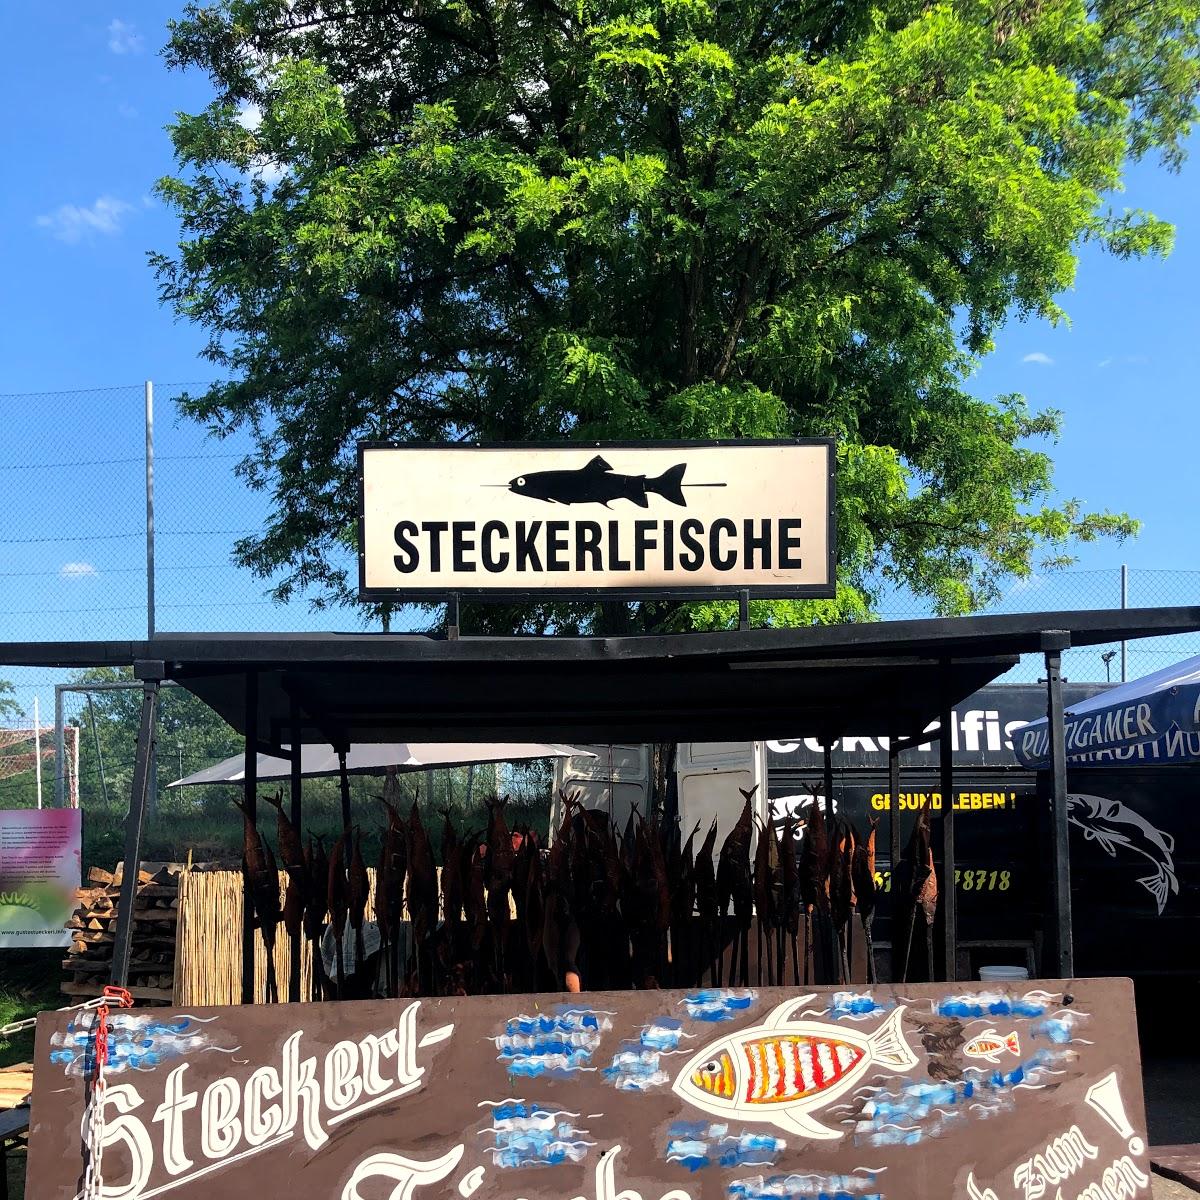 Restaurant "Steckerlfische" in Emmersdorf an der Donau